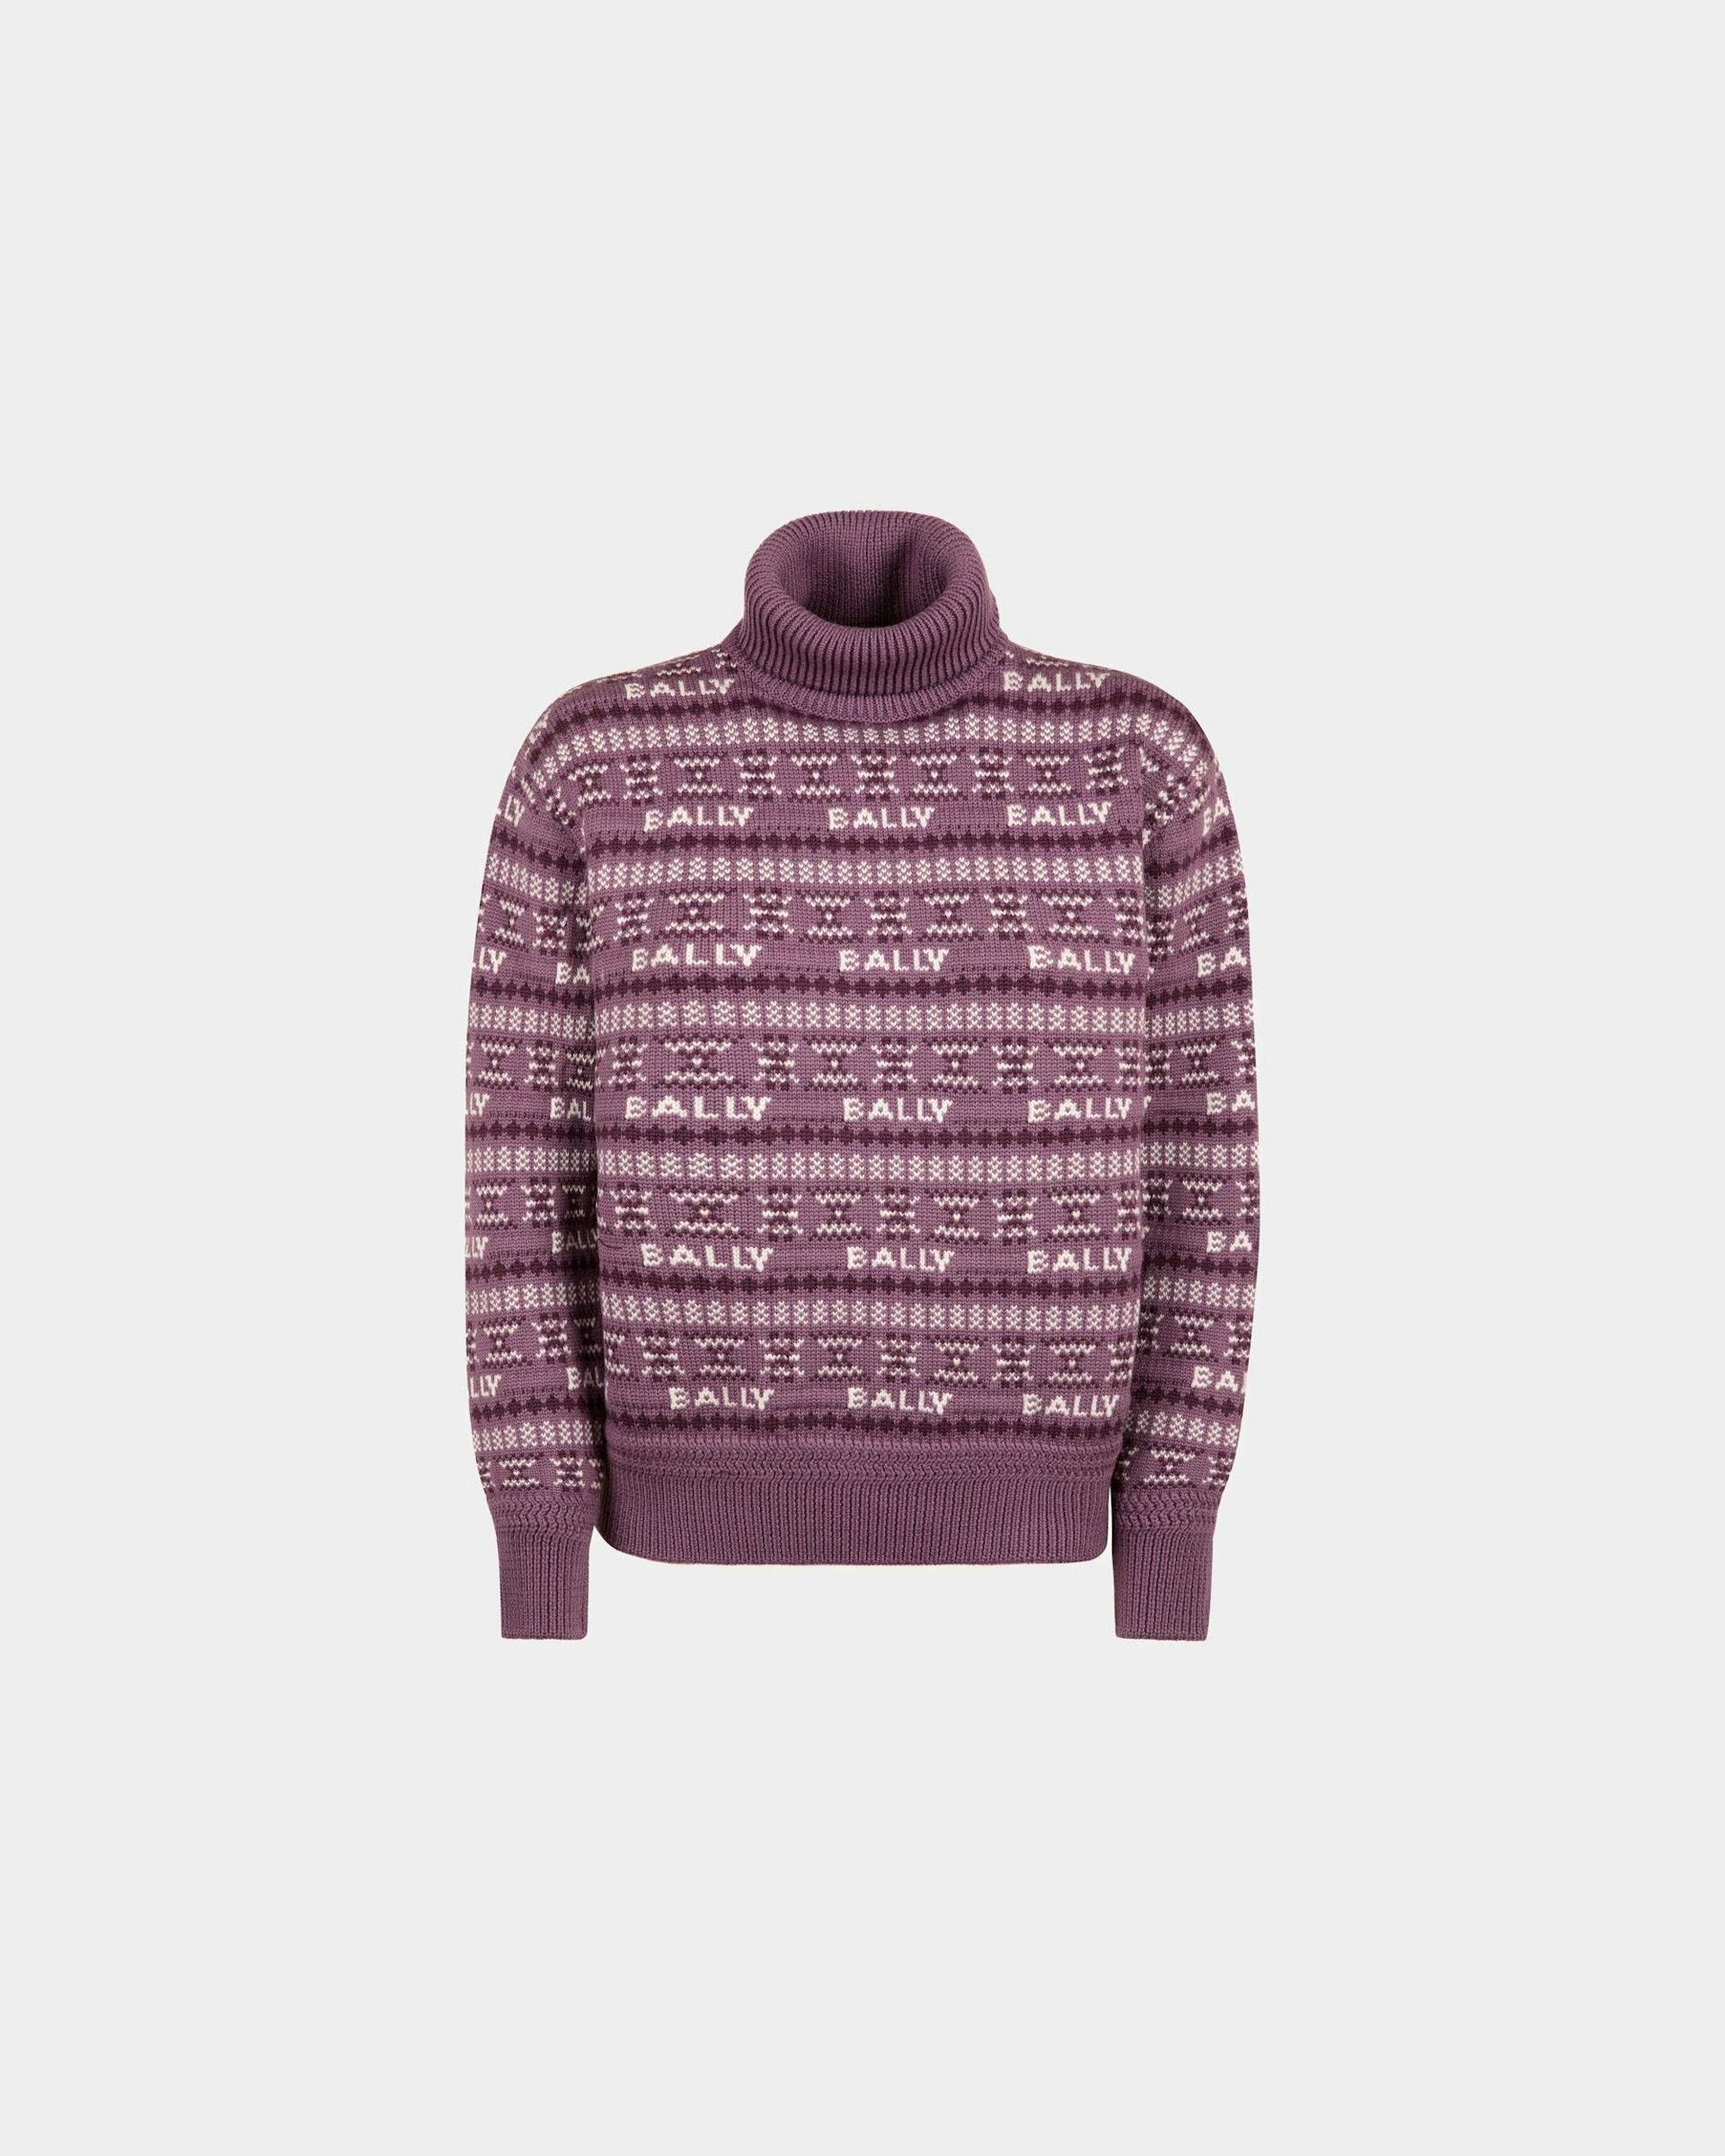 Women's Turtleneck Sweater In Purple Wool | Bally | Still Life Front